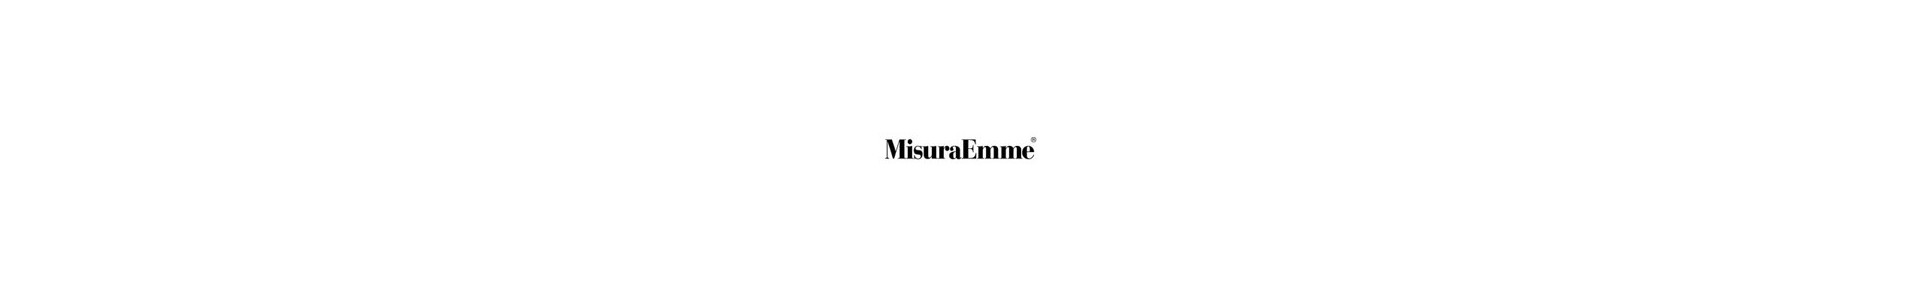 MisuraEmme: Catalogo y Muebles Misura - Muebles Lluesma